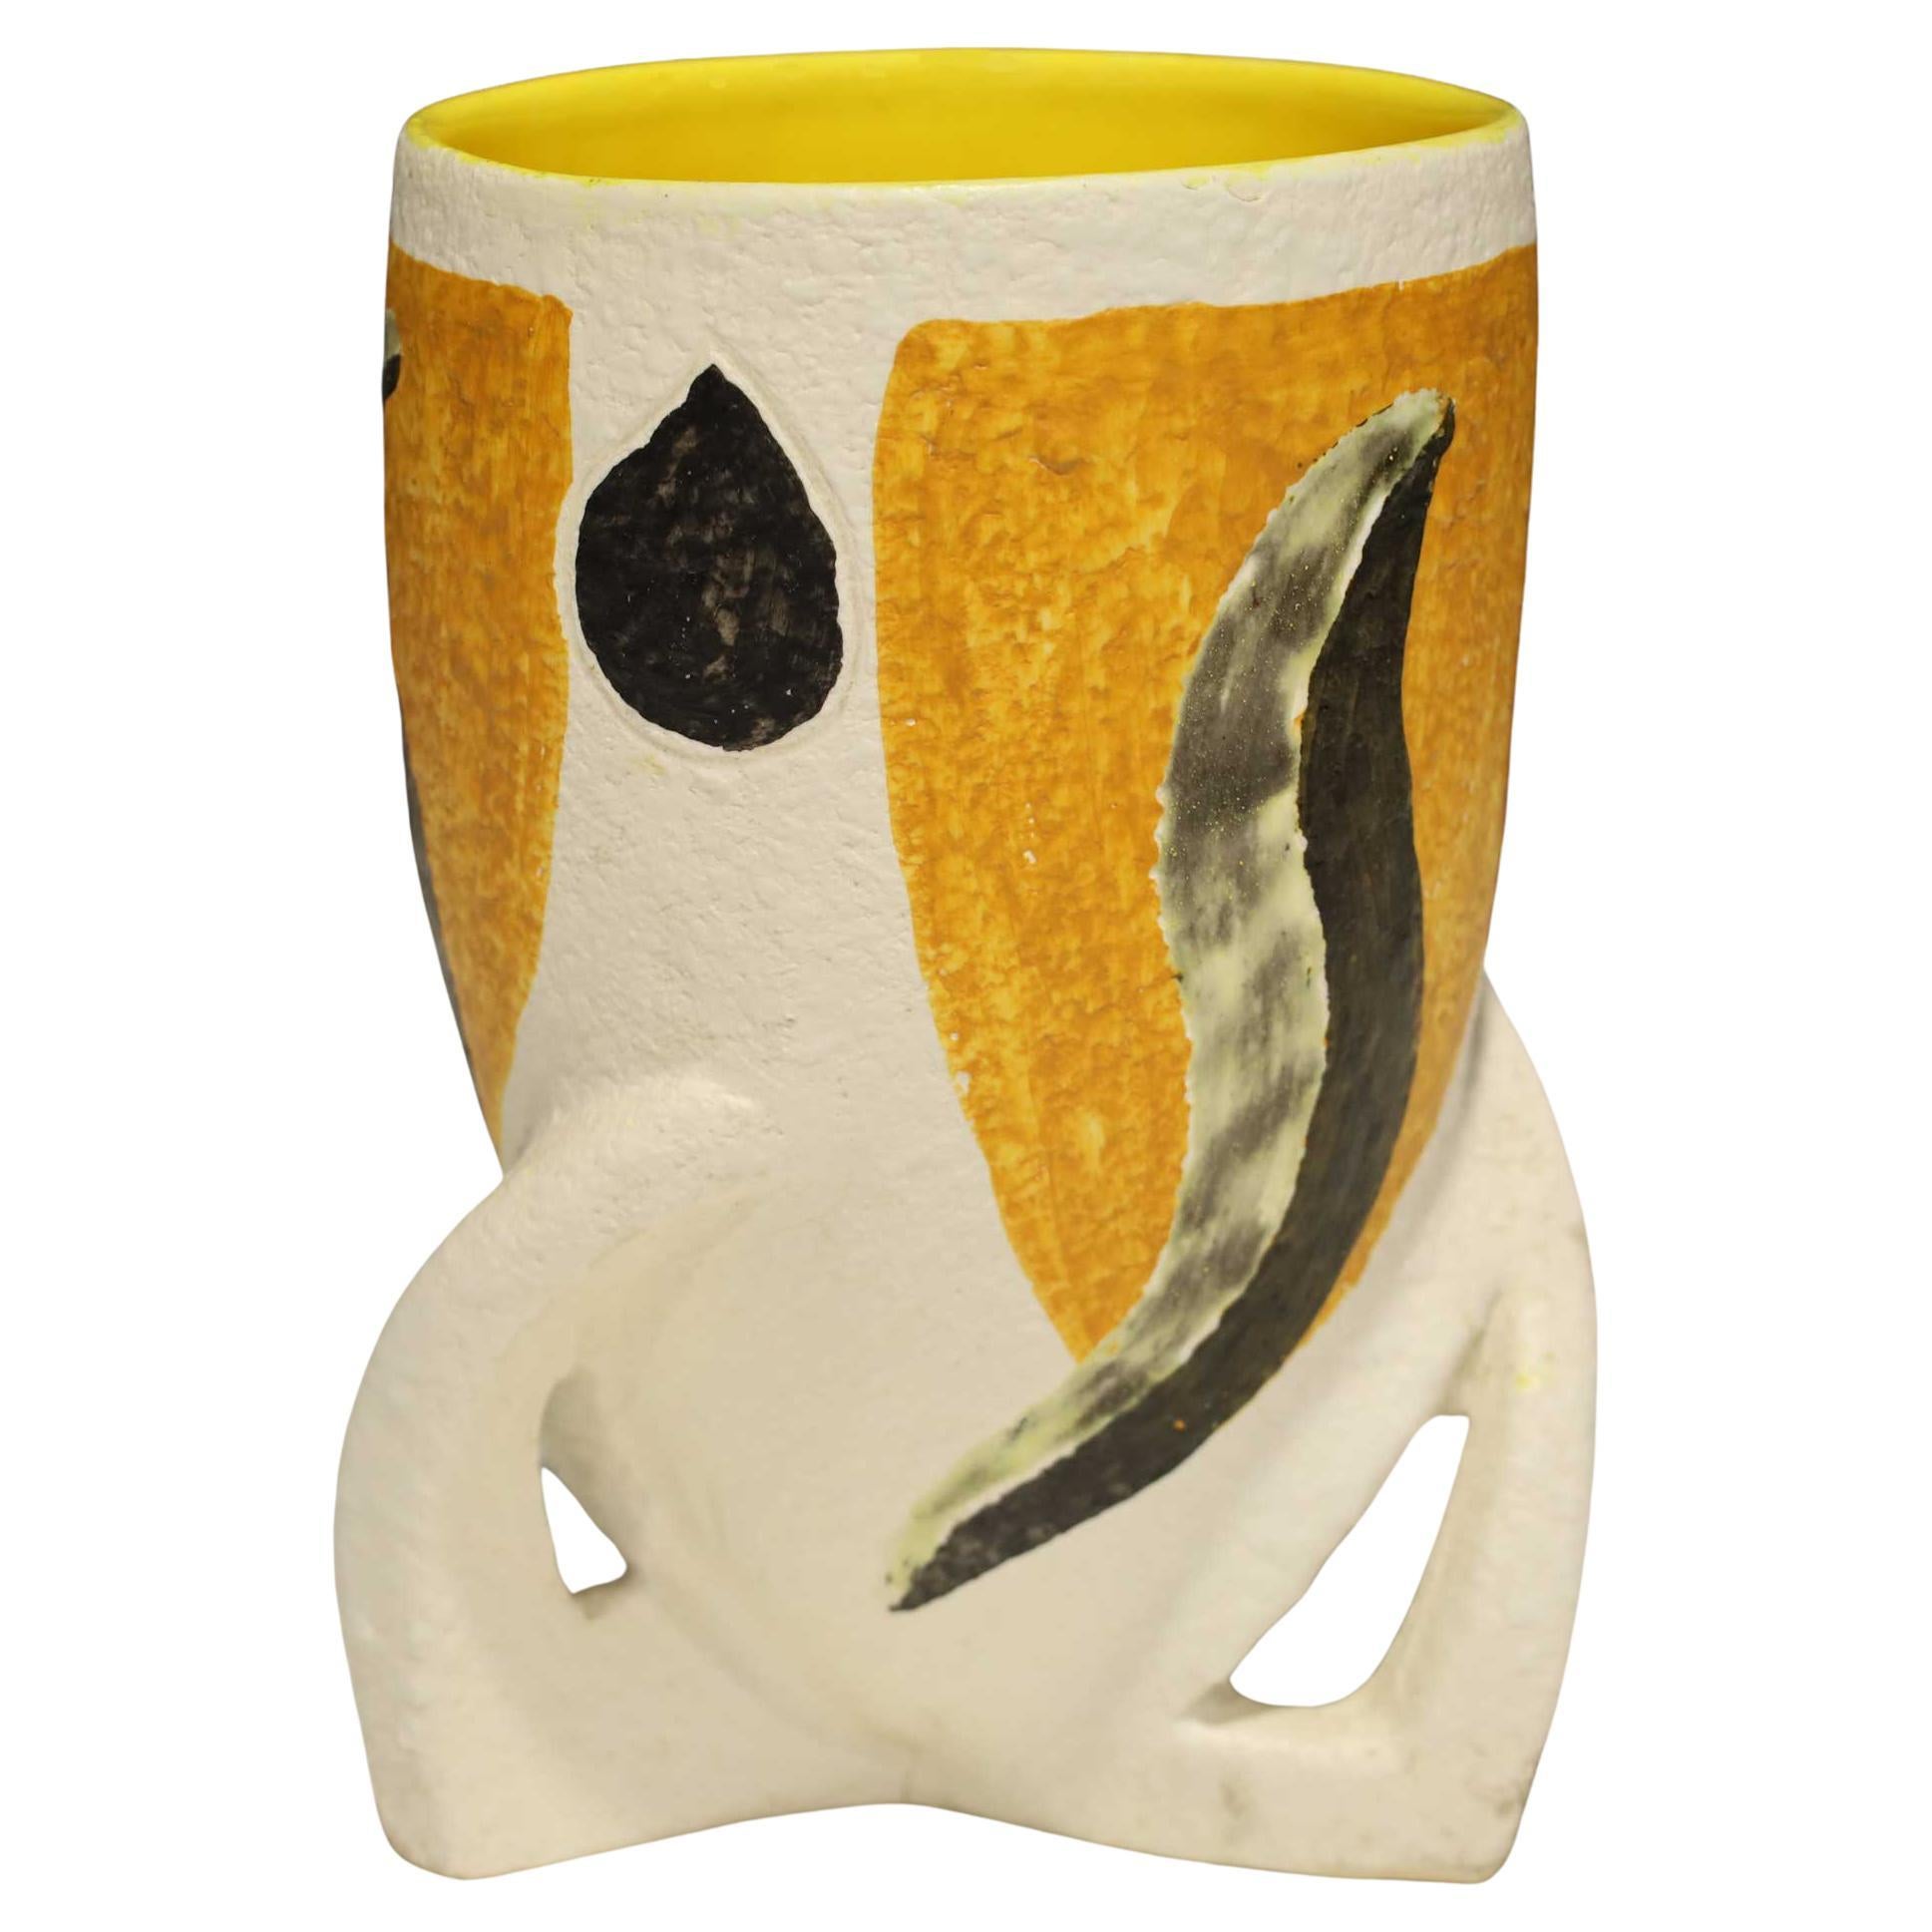 Vase attribué à Giacomo Balla en jaune, noir et blanc